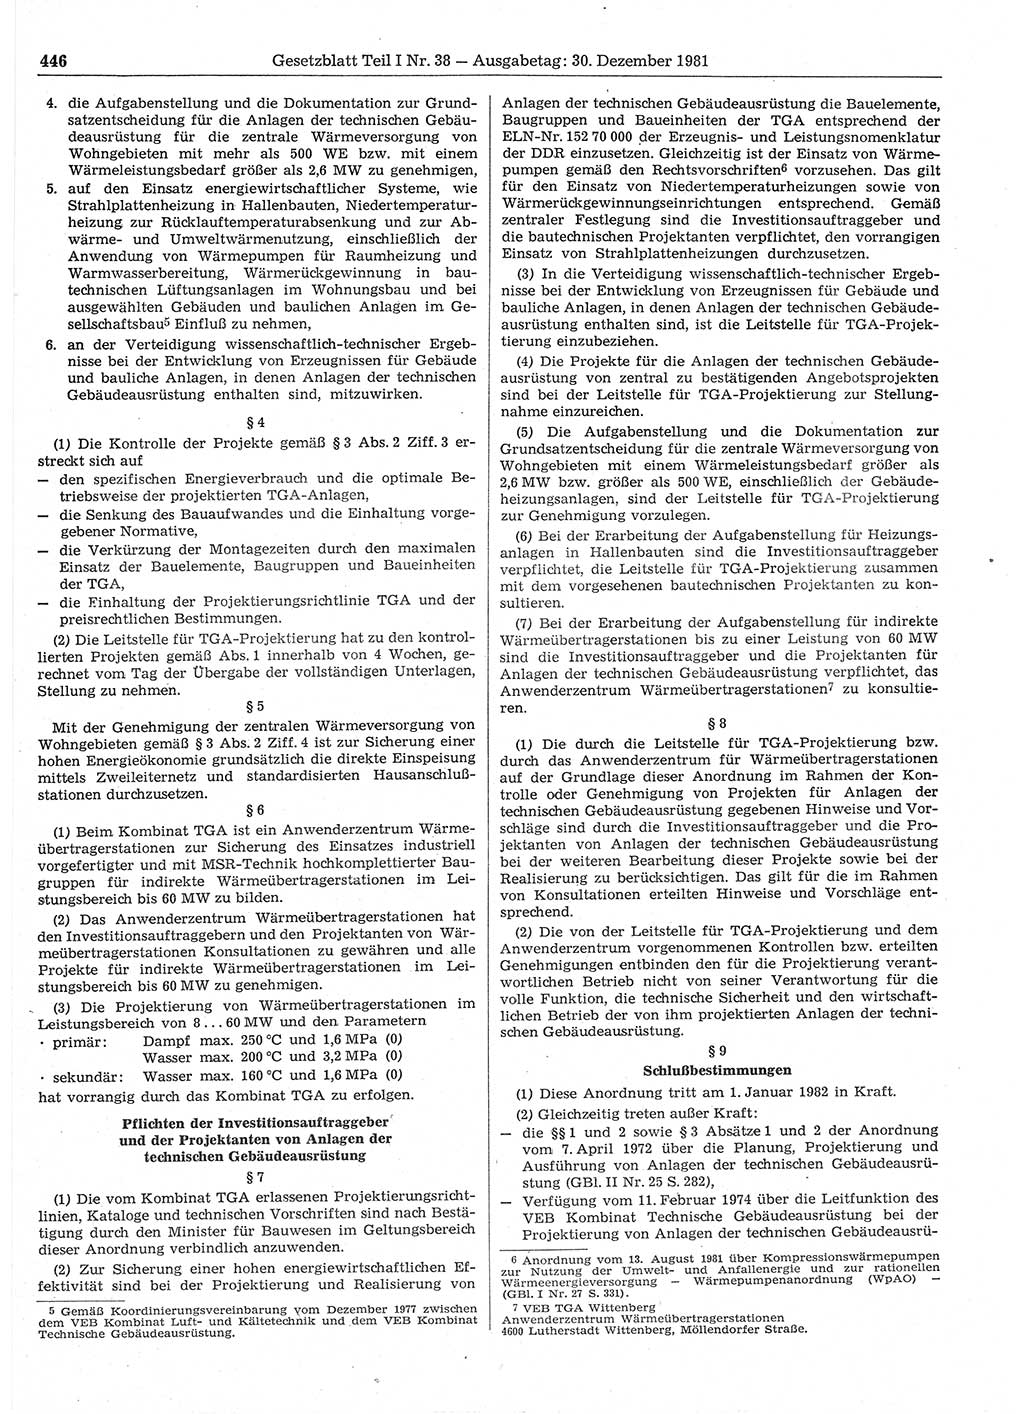 Gesetzblatt (GBl.) der Deutschen Demokratischen Republik (DDR) Teil Ⅰ 1981, Seite 446 (GBl. DDR Ⅰ 1981, S. 446)